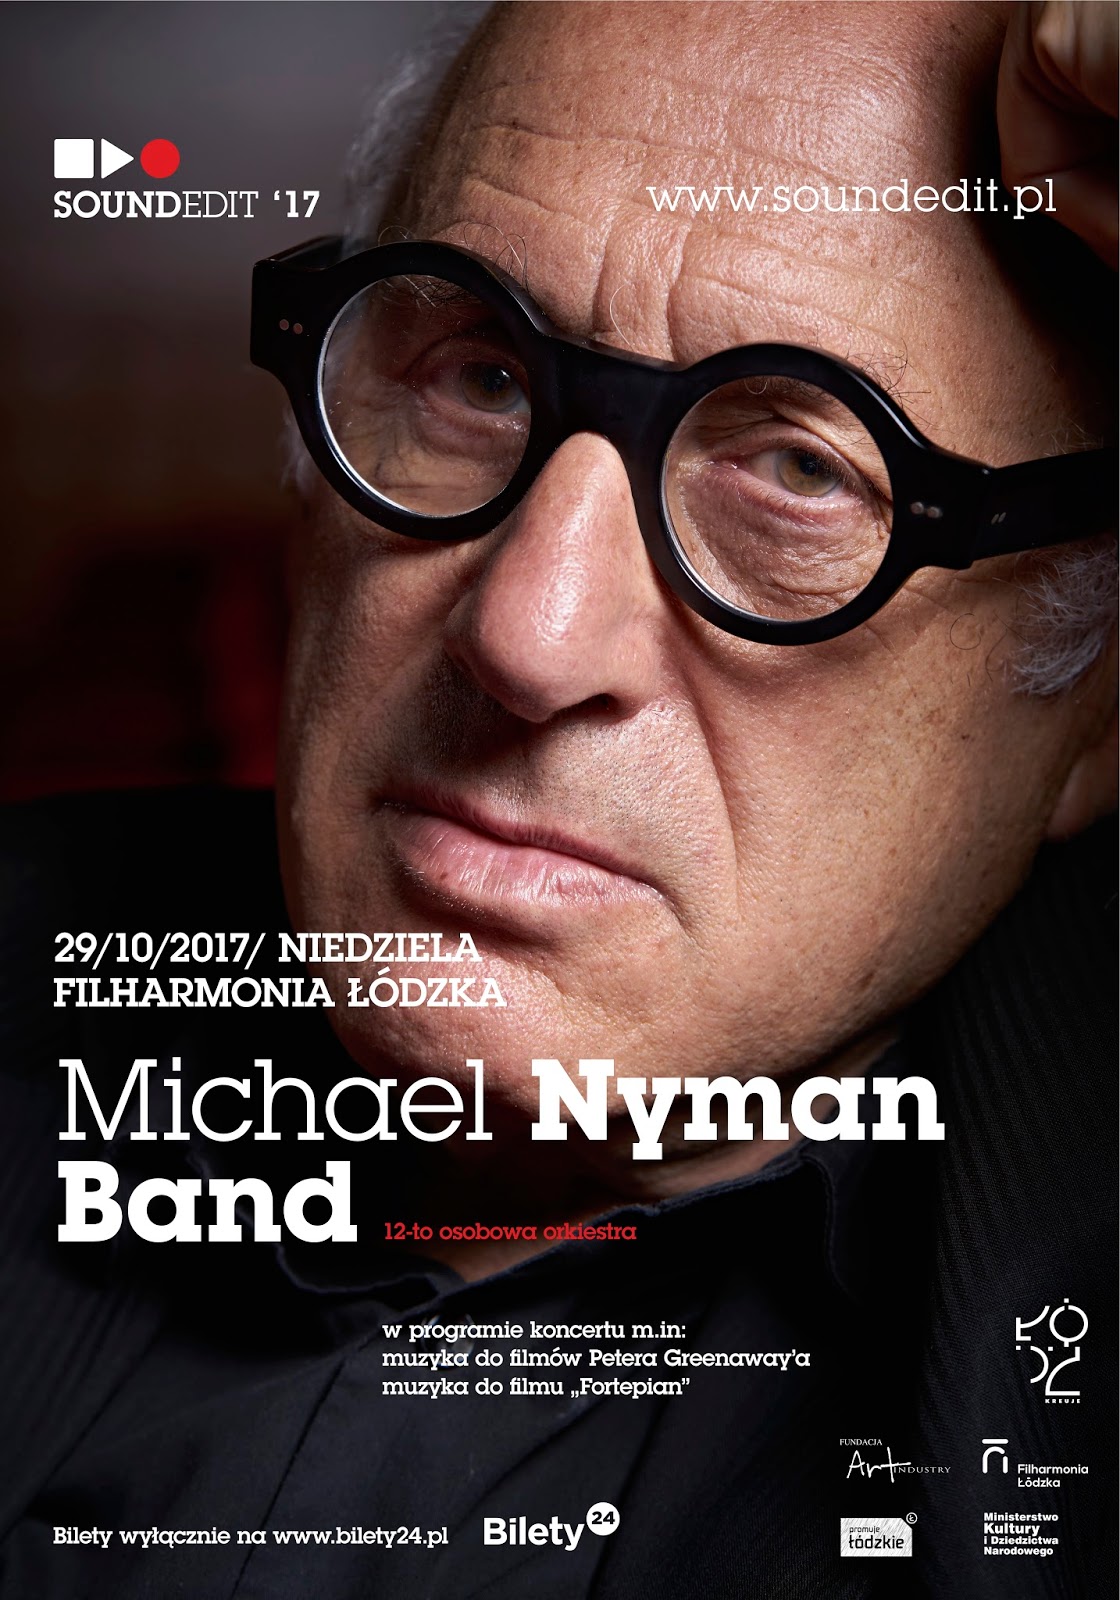 Soundedit ’17 - Michael Nyman w Filharmonii Łódzkiej